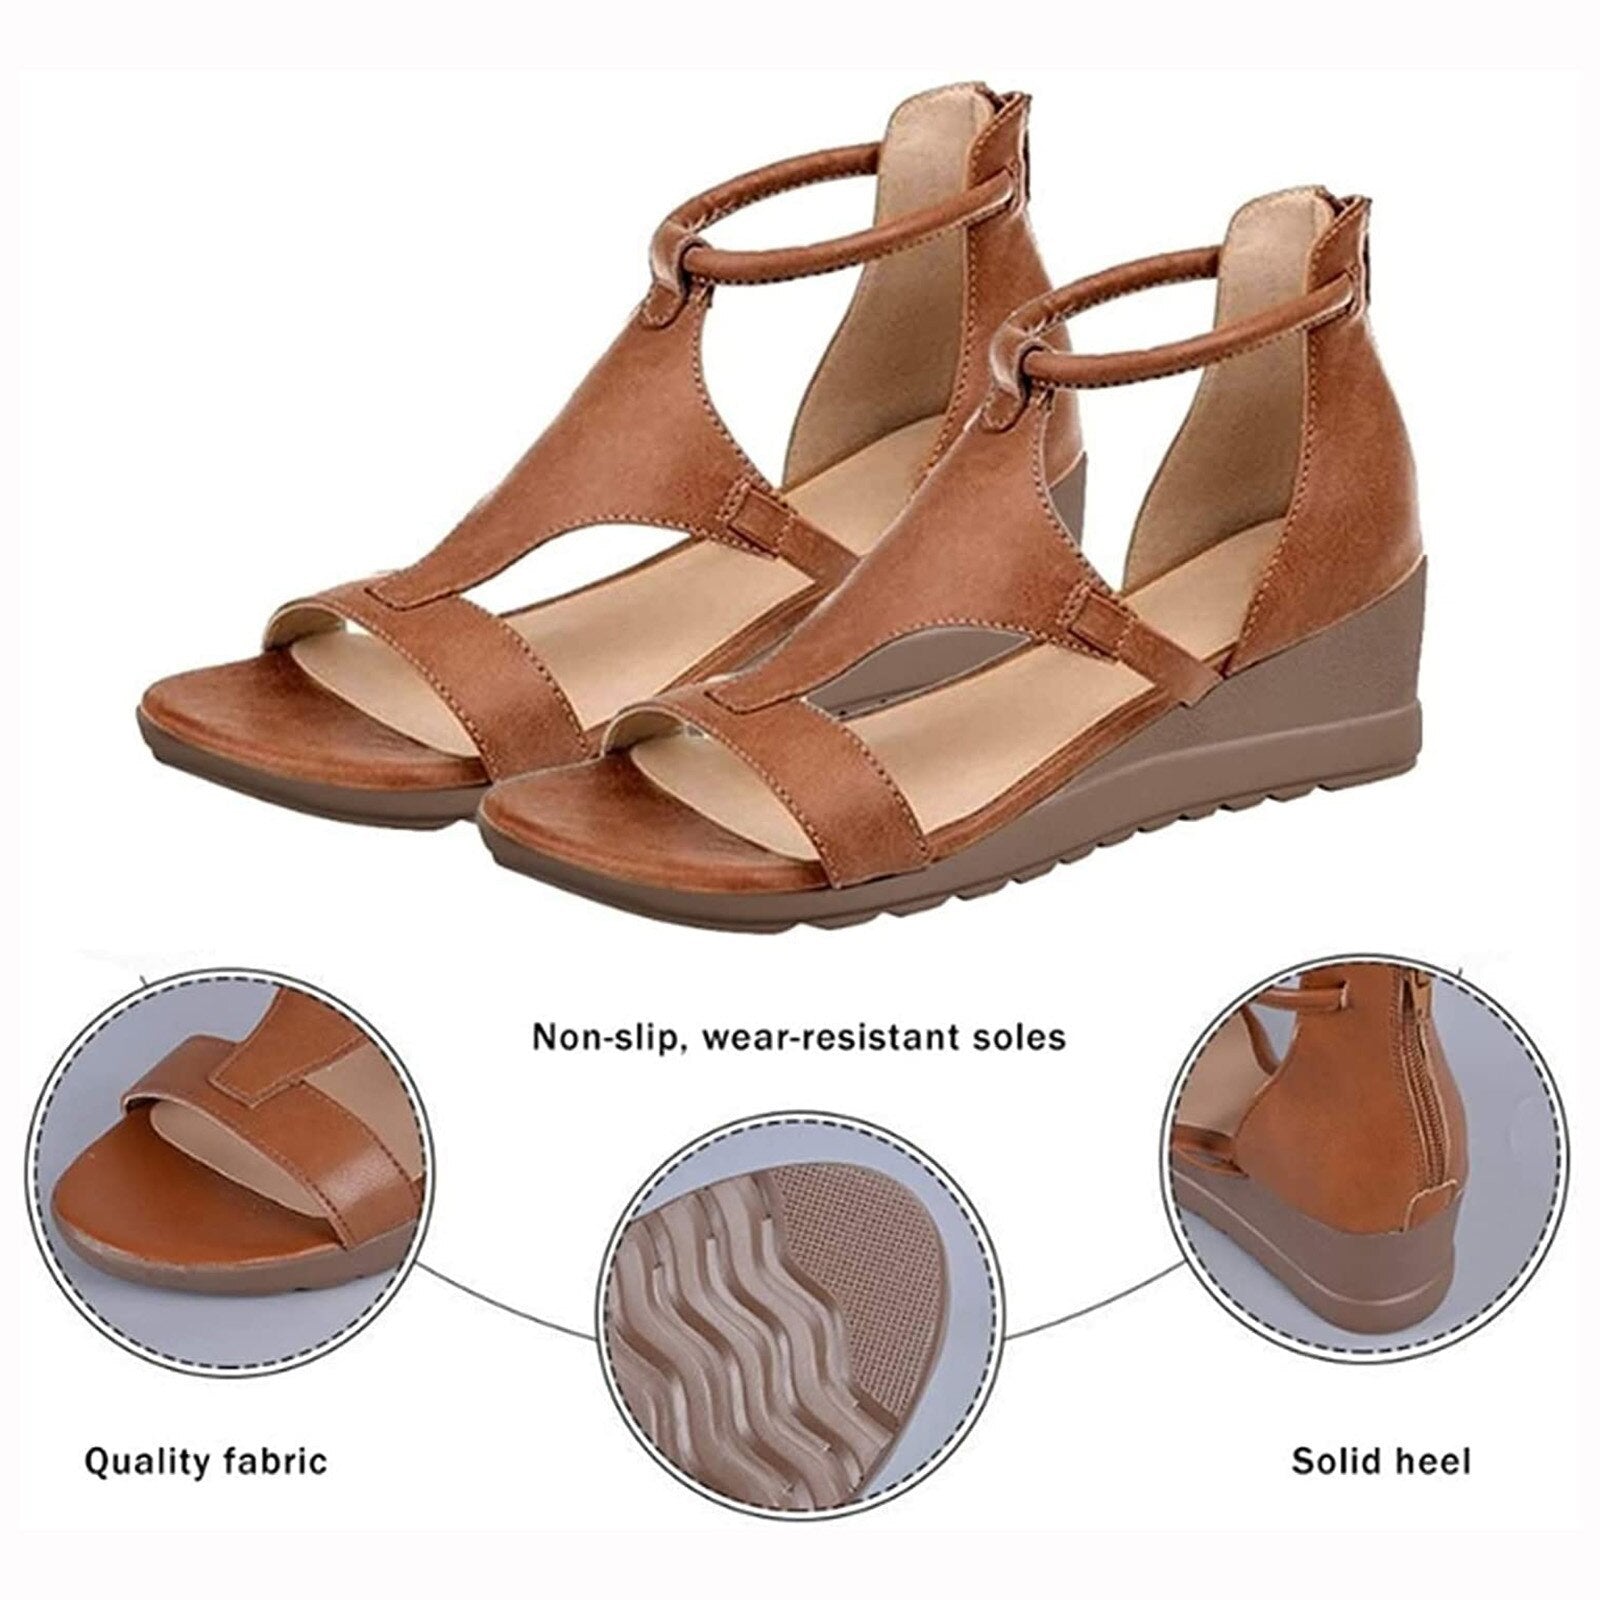 Brenna Ortho Sandalen - Comfortabele sleehak sandalen 50%KORTING